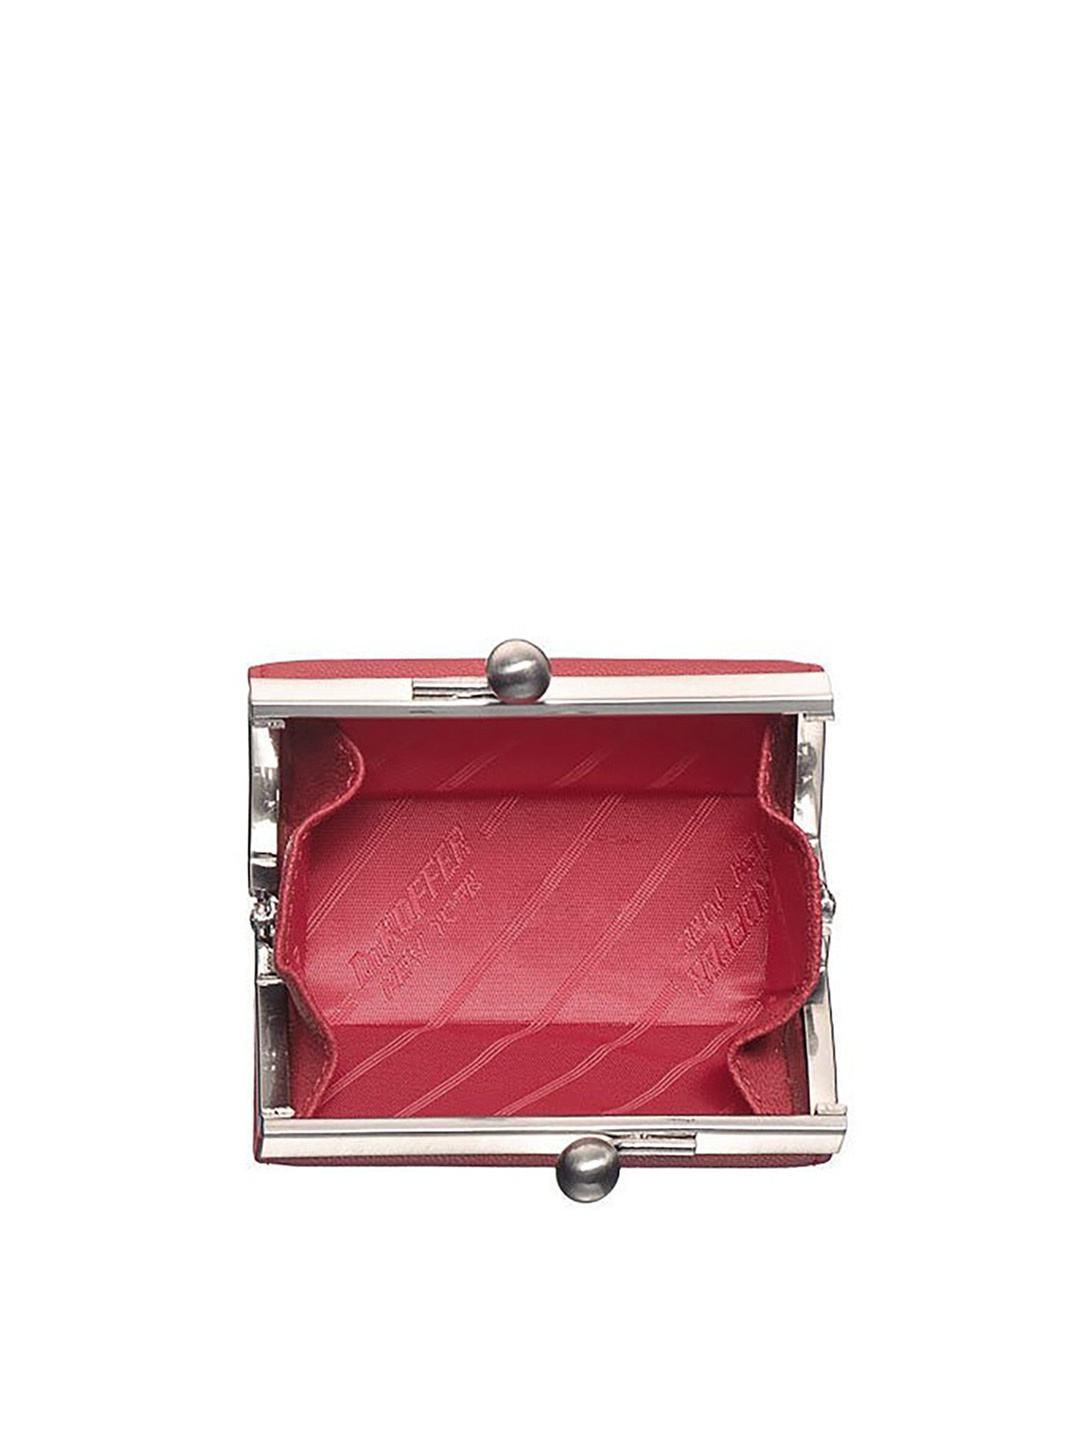 Женская мини-шкатулка для драгоценностей из мягкой кожи с тиснением под ската